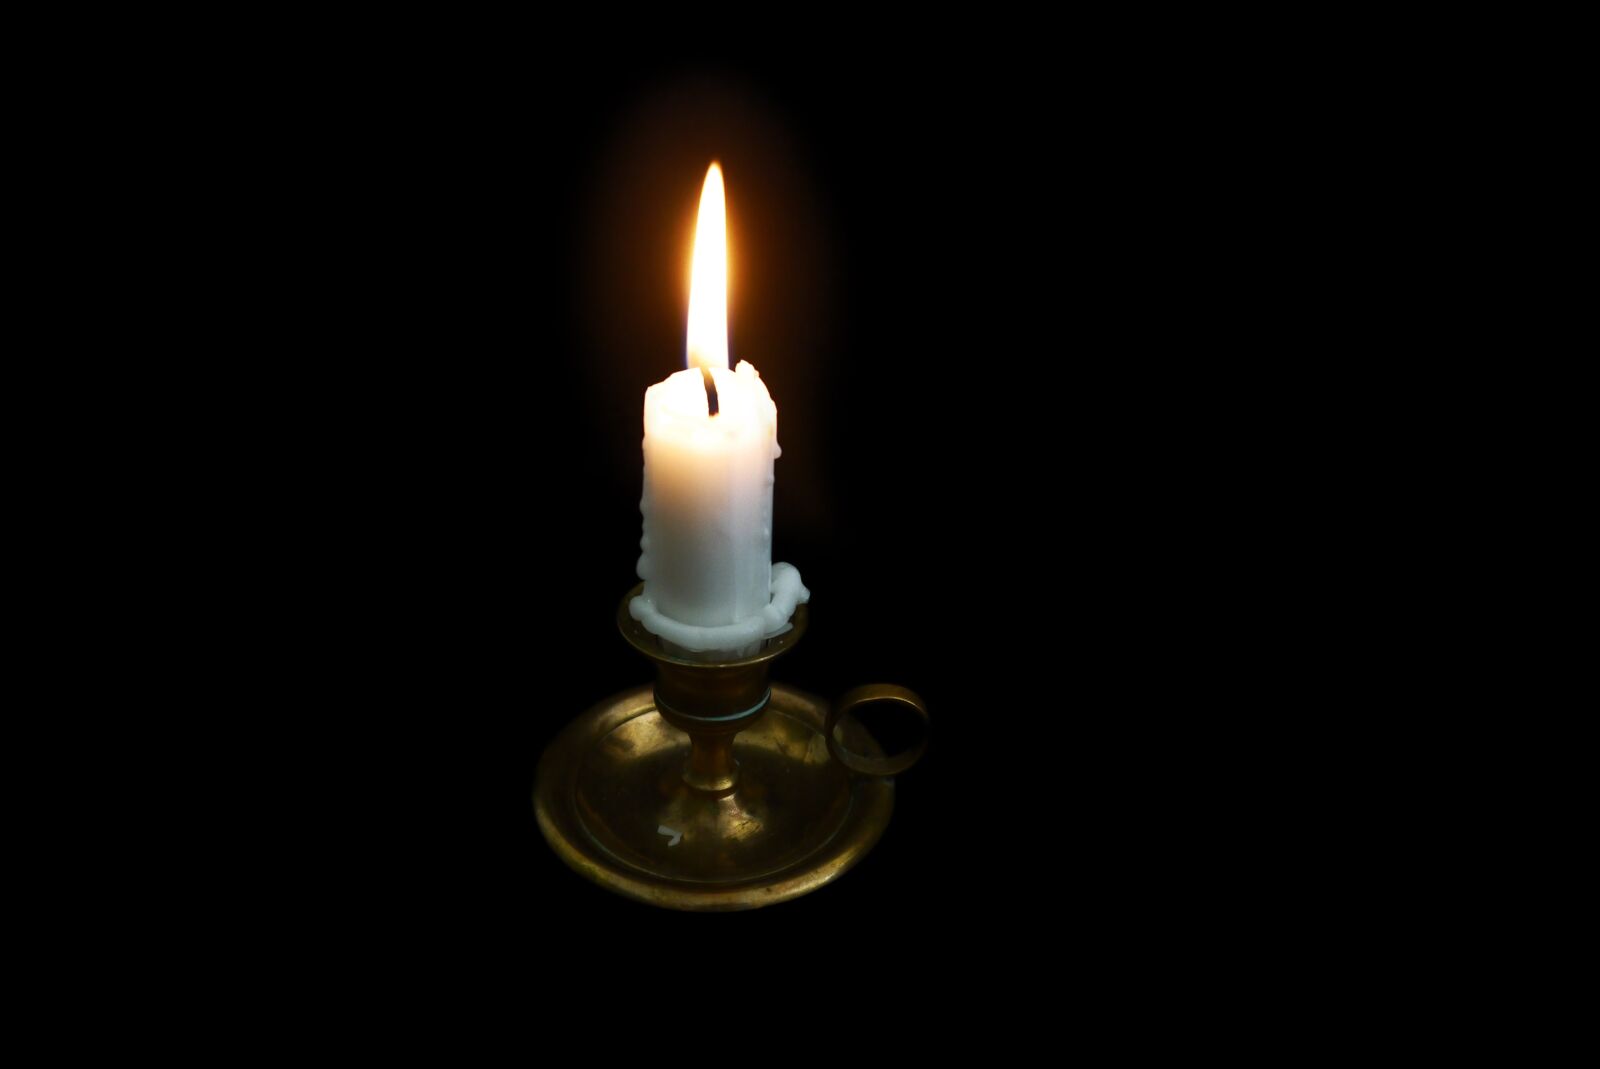 Panasonic Lumix DMC-GF5 sample photo. Candles, light, burns photography